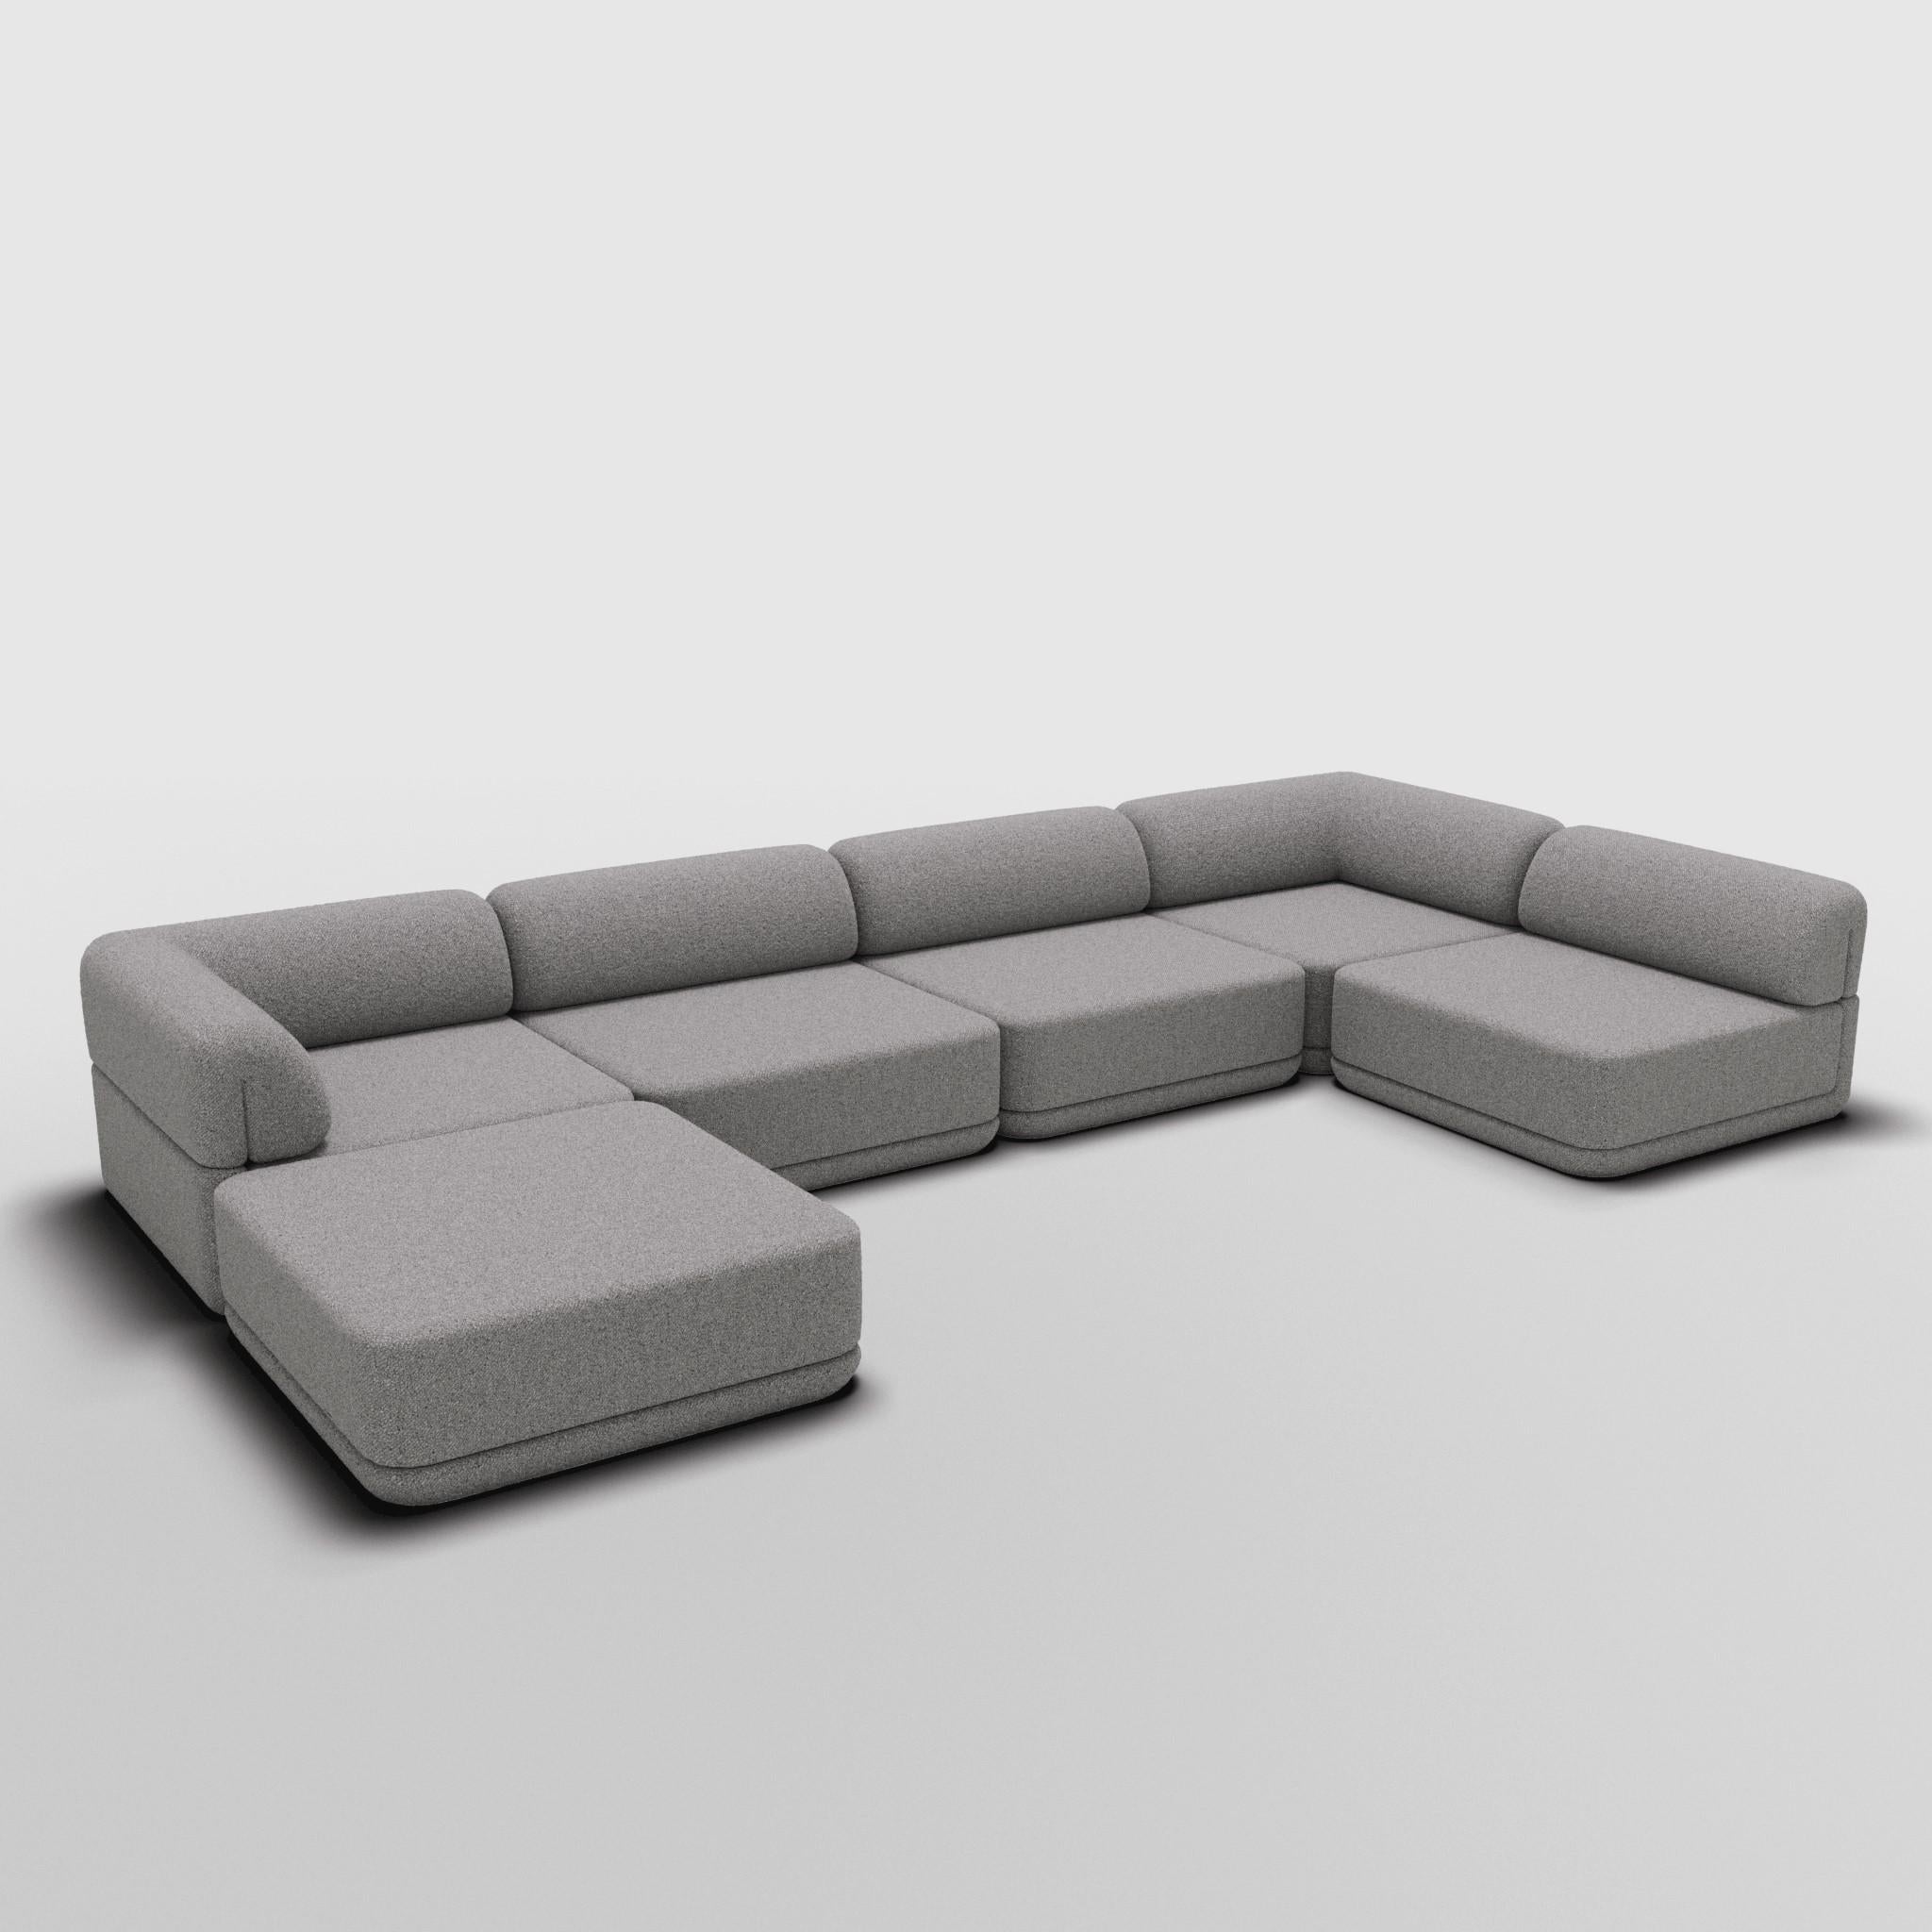 Mid-Century Modern Le canapé cube - Lounge Sectional en vente